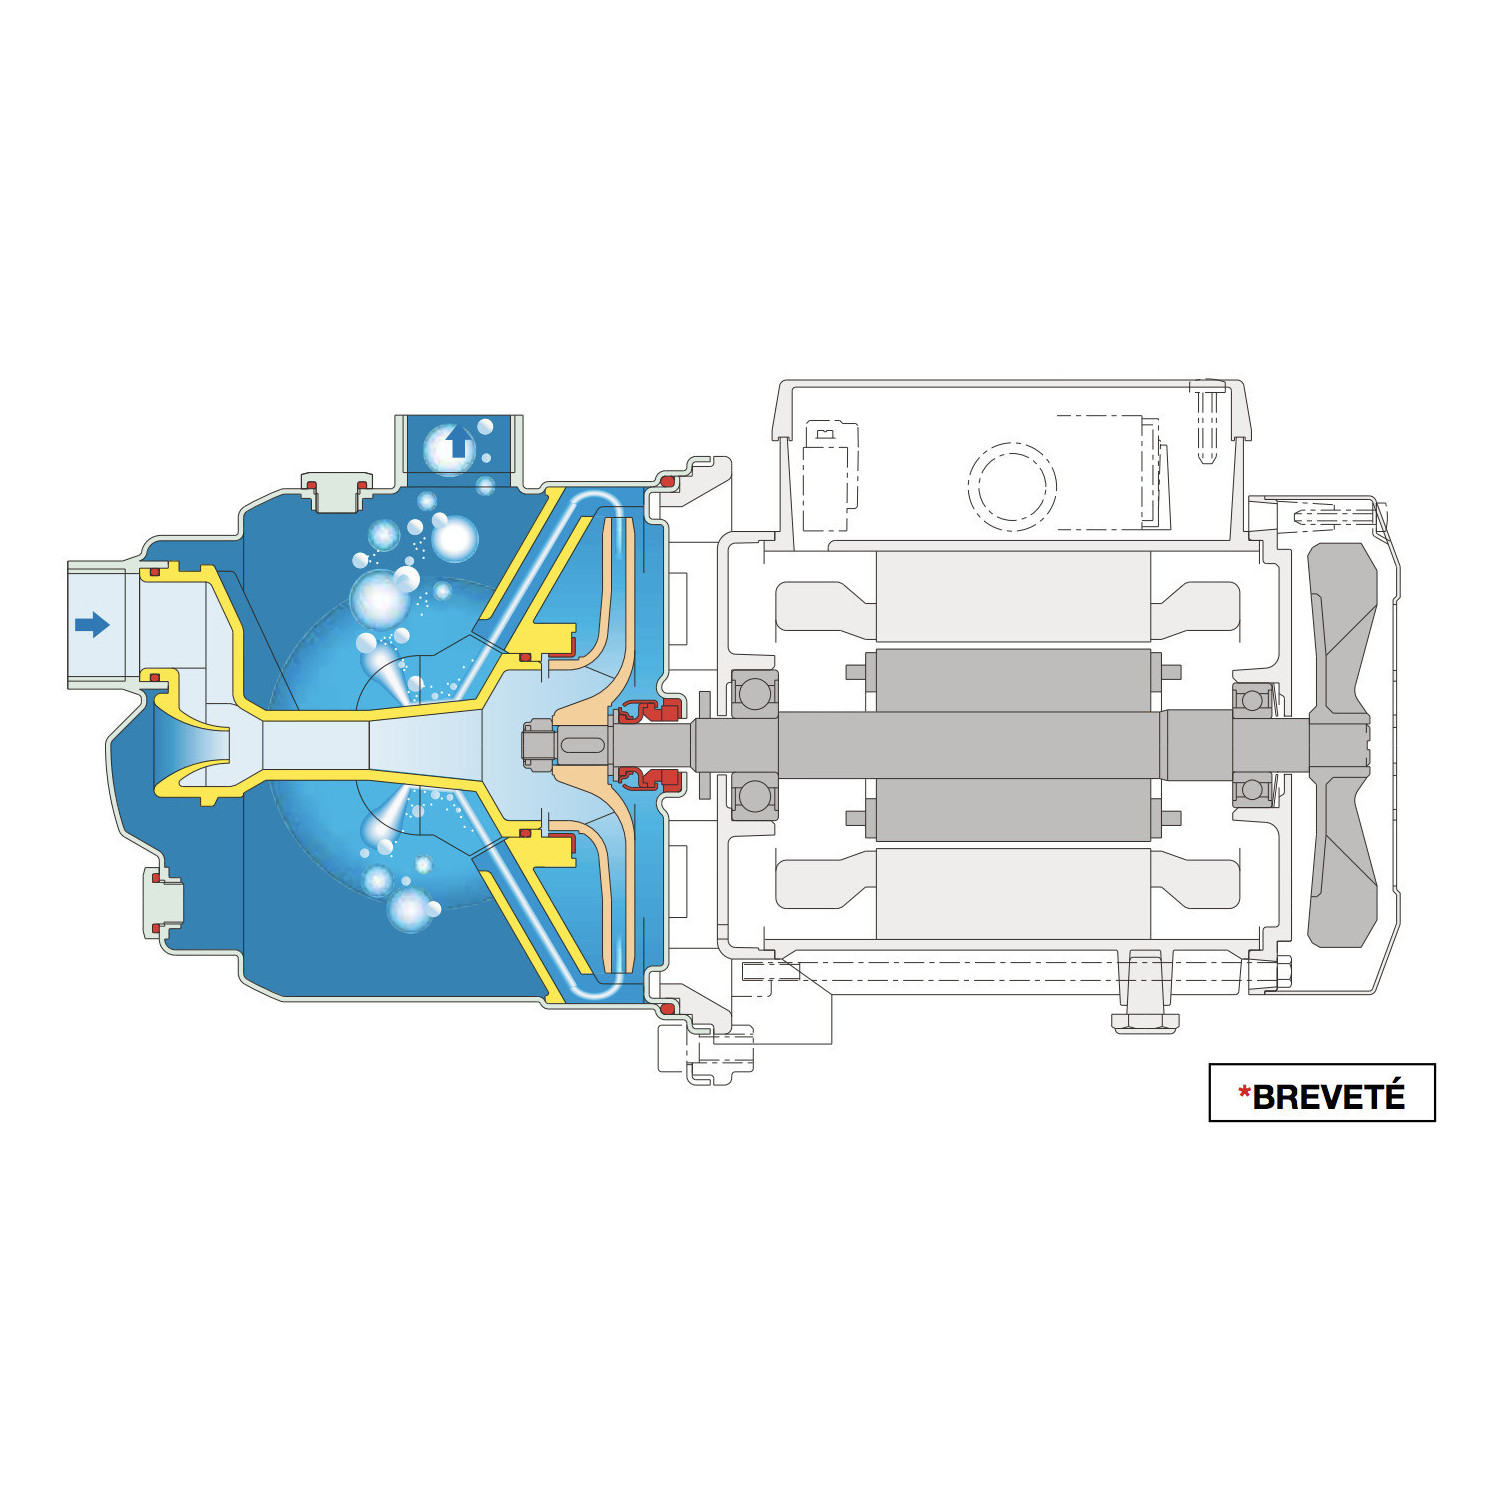 Pompe à eau auto amorçante CALPEDA NGXM422 - Inox 1,10 kW  8,4 m3/h 220V - Pompe de surface pour puit